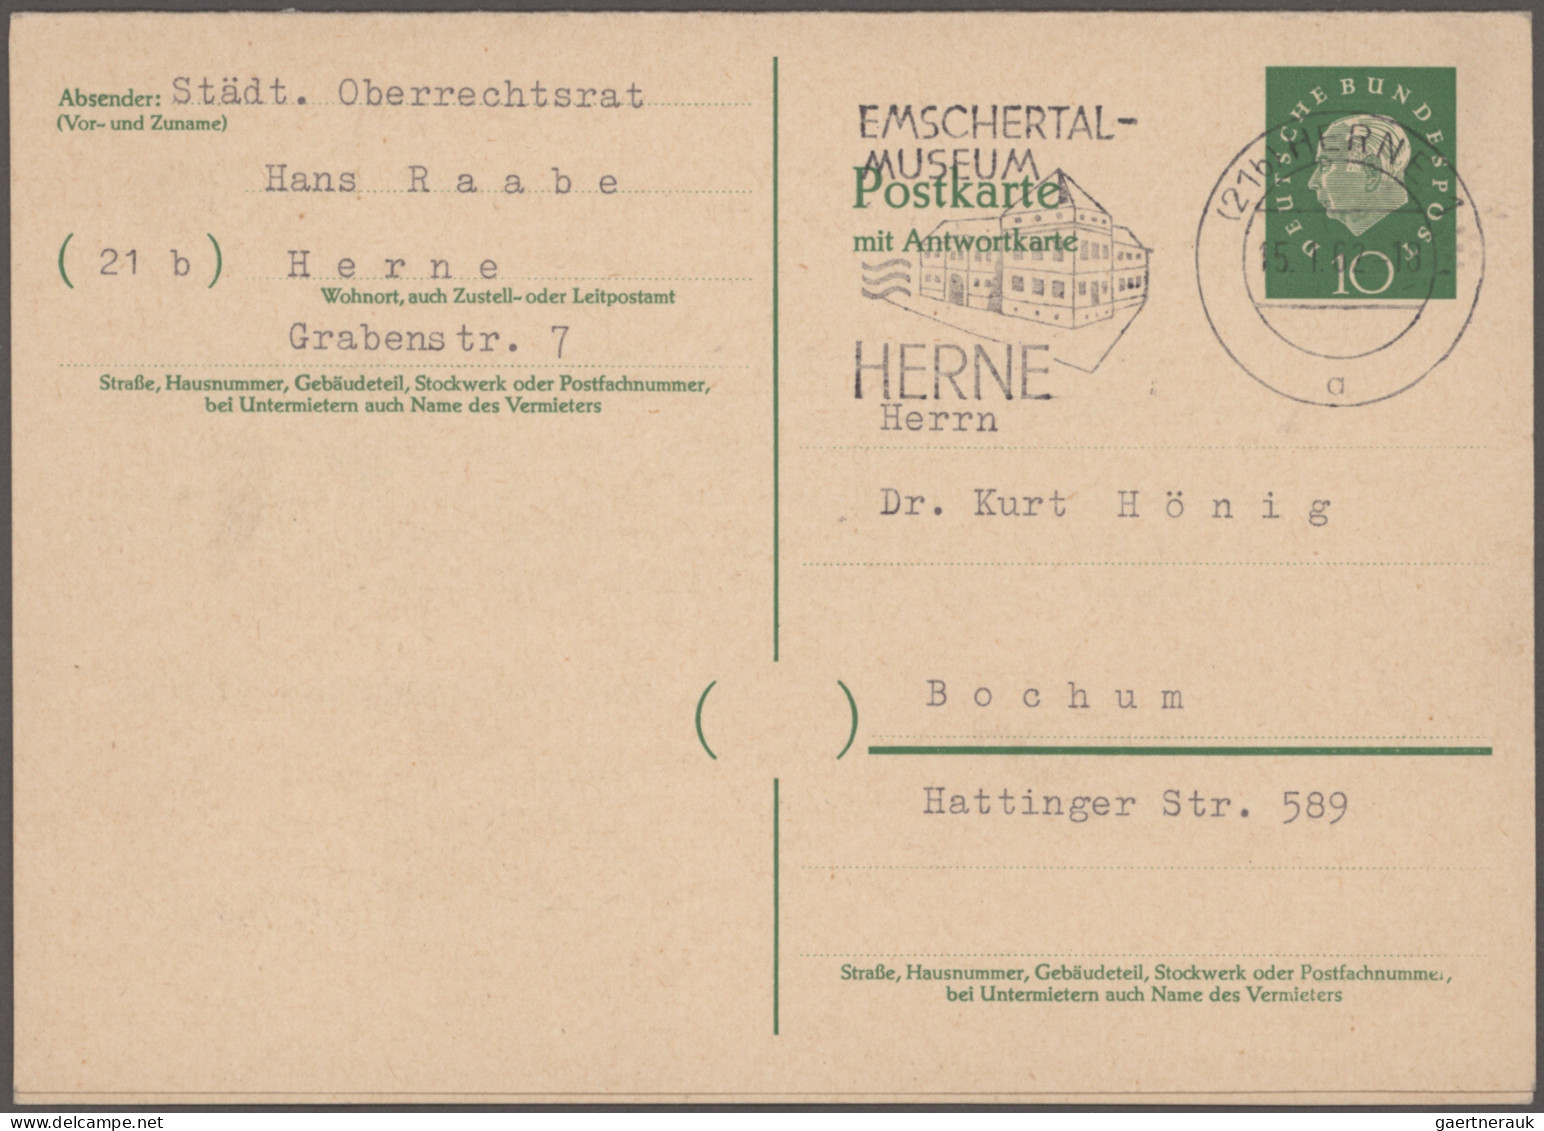 Bundesrepublik - Ganzsachen: 1949/2010 (ca.), umfangreiche Sammlung von einigen